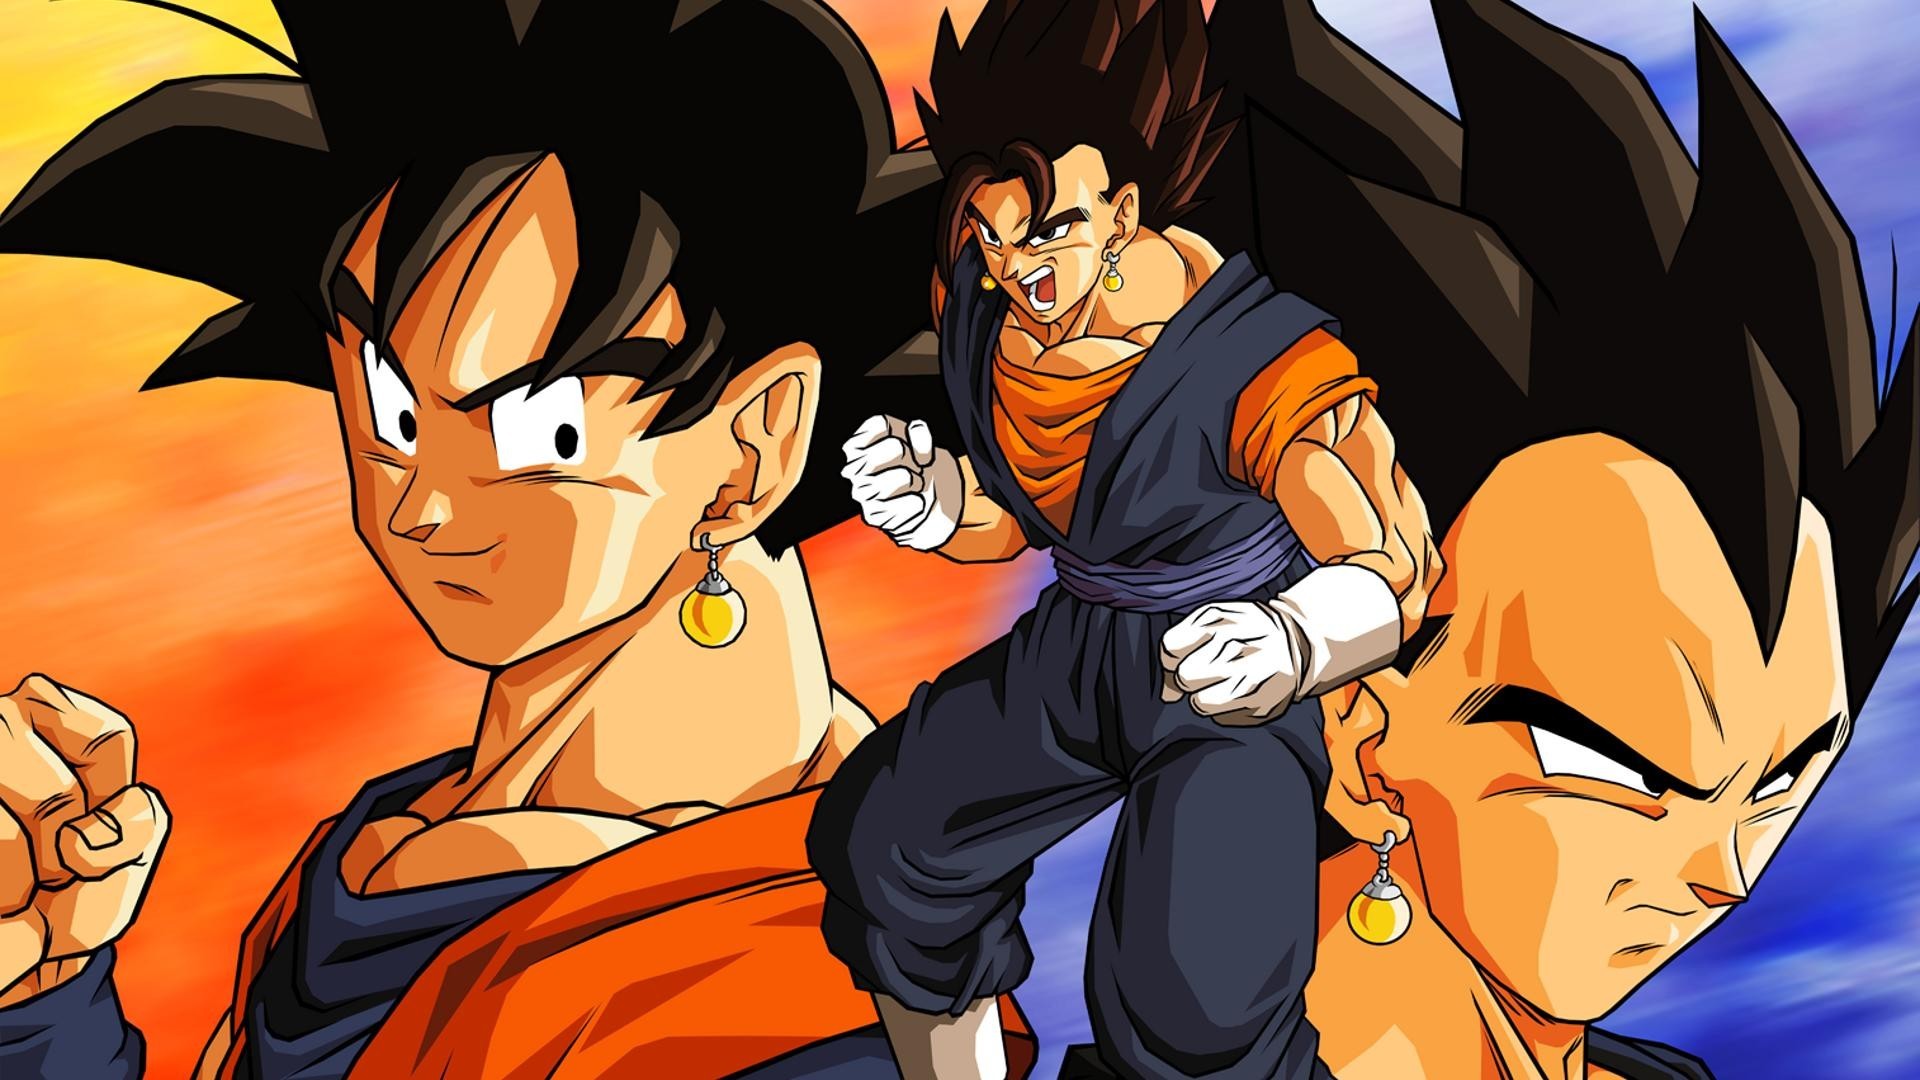 Free Goku And Vegeta Wallpapers, Goku And Vegeta 18 Backgrounds, Goku And Vegeta Images